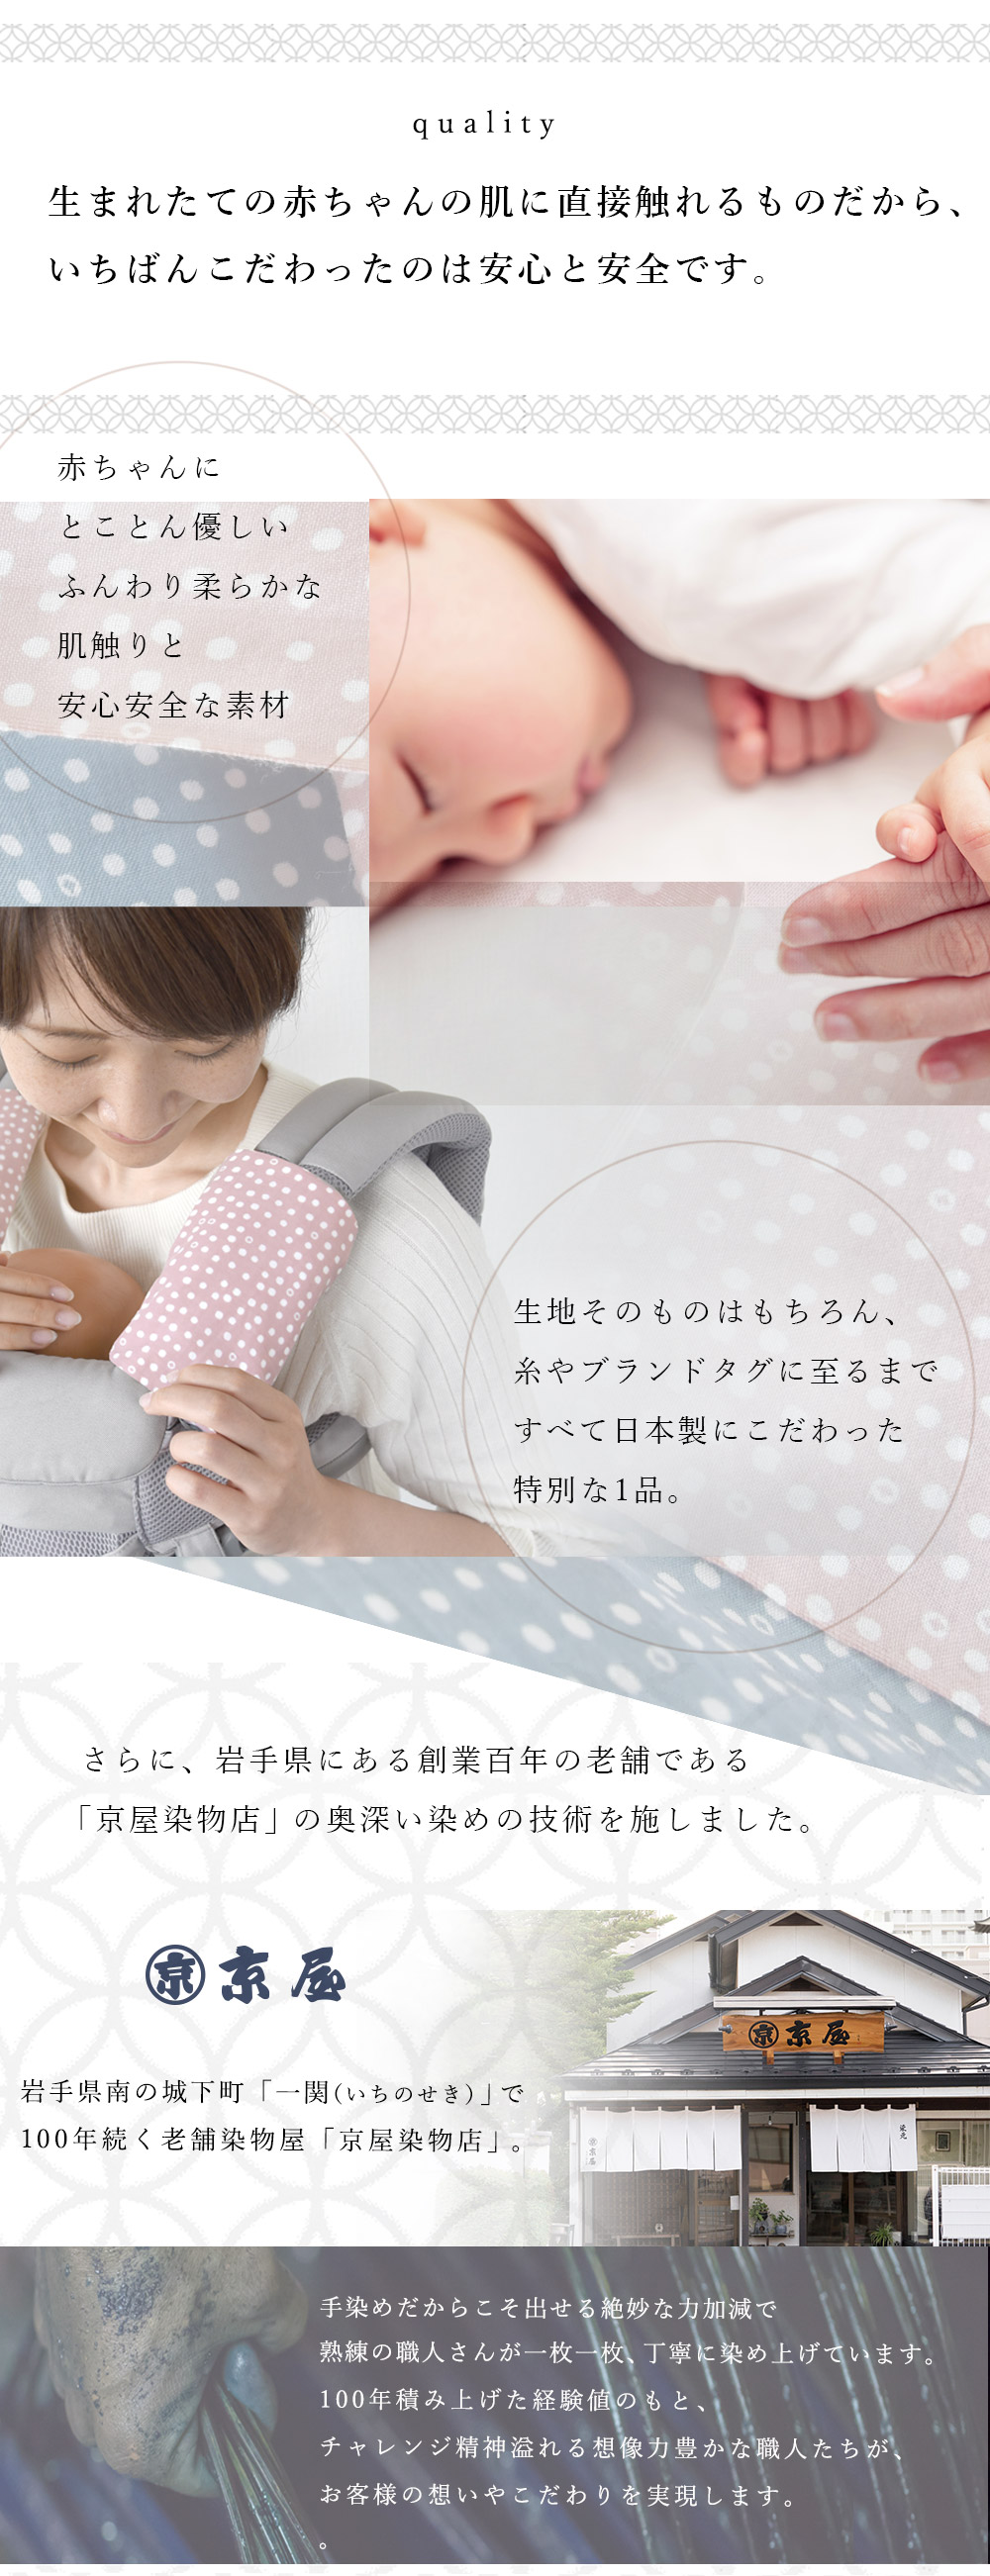 赤ちゃんにとことん優しいふんわり柔らかな肌触りと安心安全な素材。糸やタグに至るまですべて日本製を使用